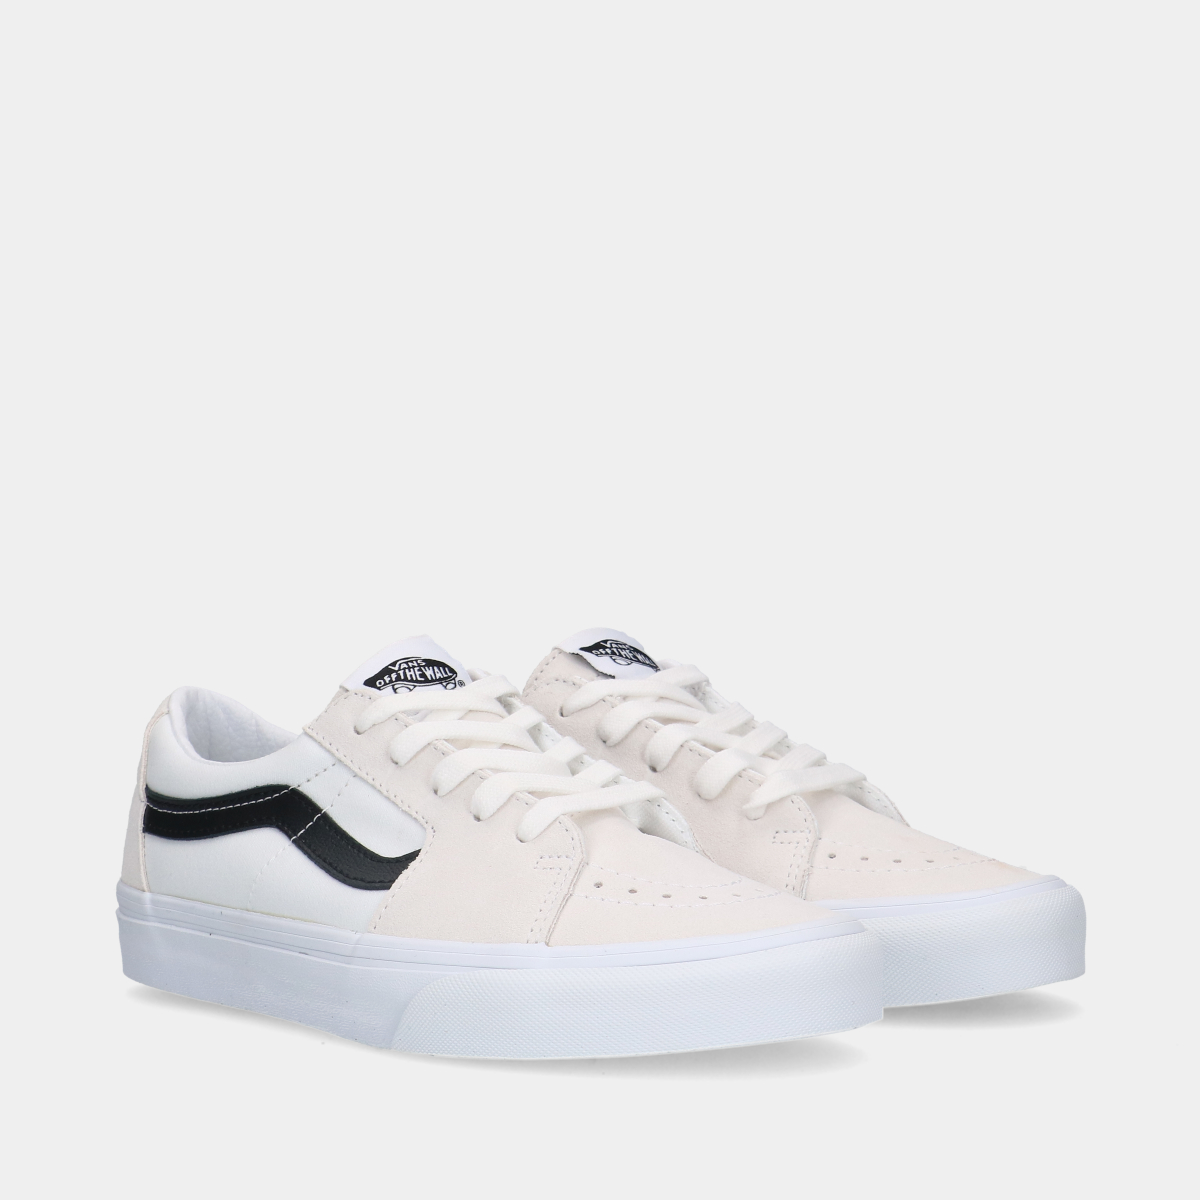 Vans Sk8-Low Contrast White/Black dames sneakers